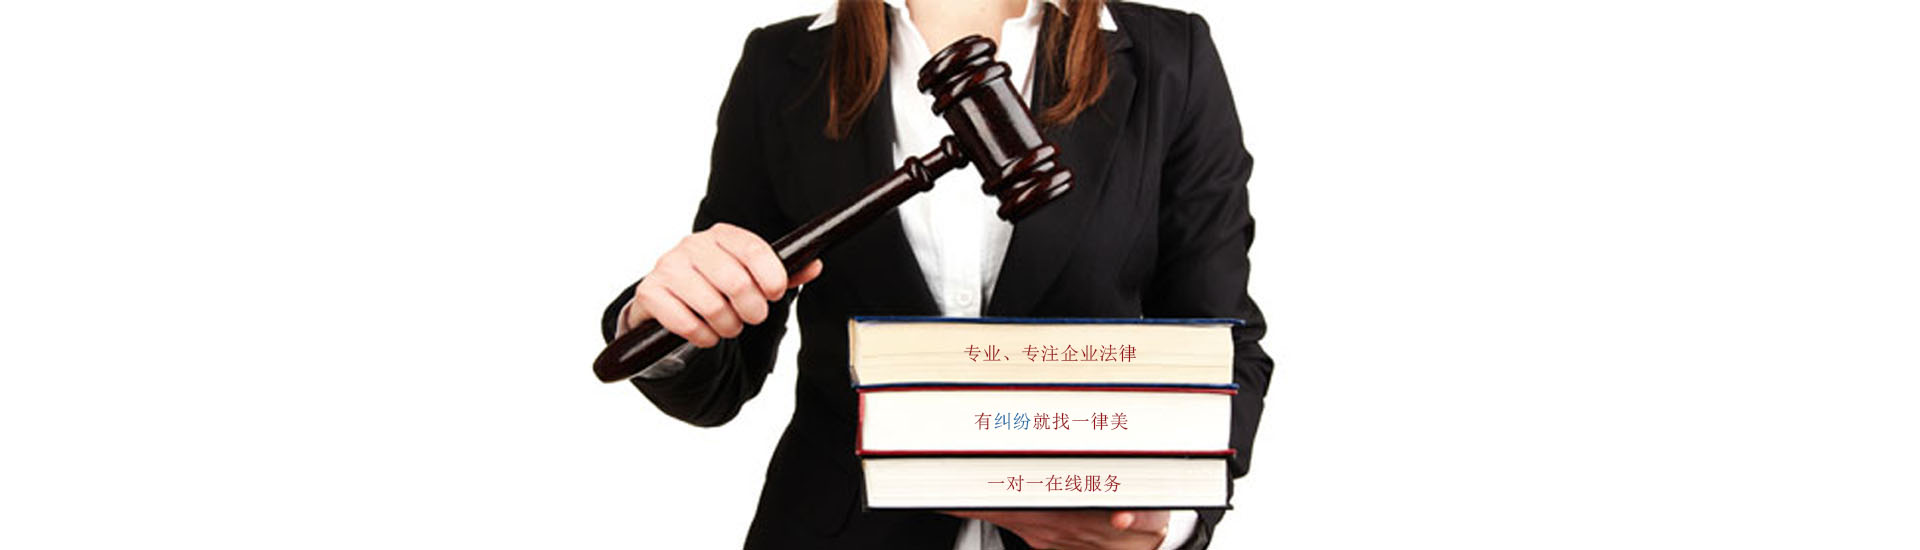 深圳企业法律顾问服务